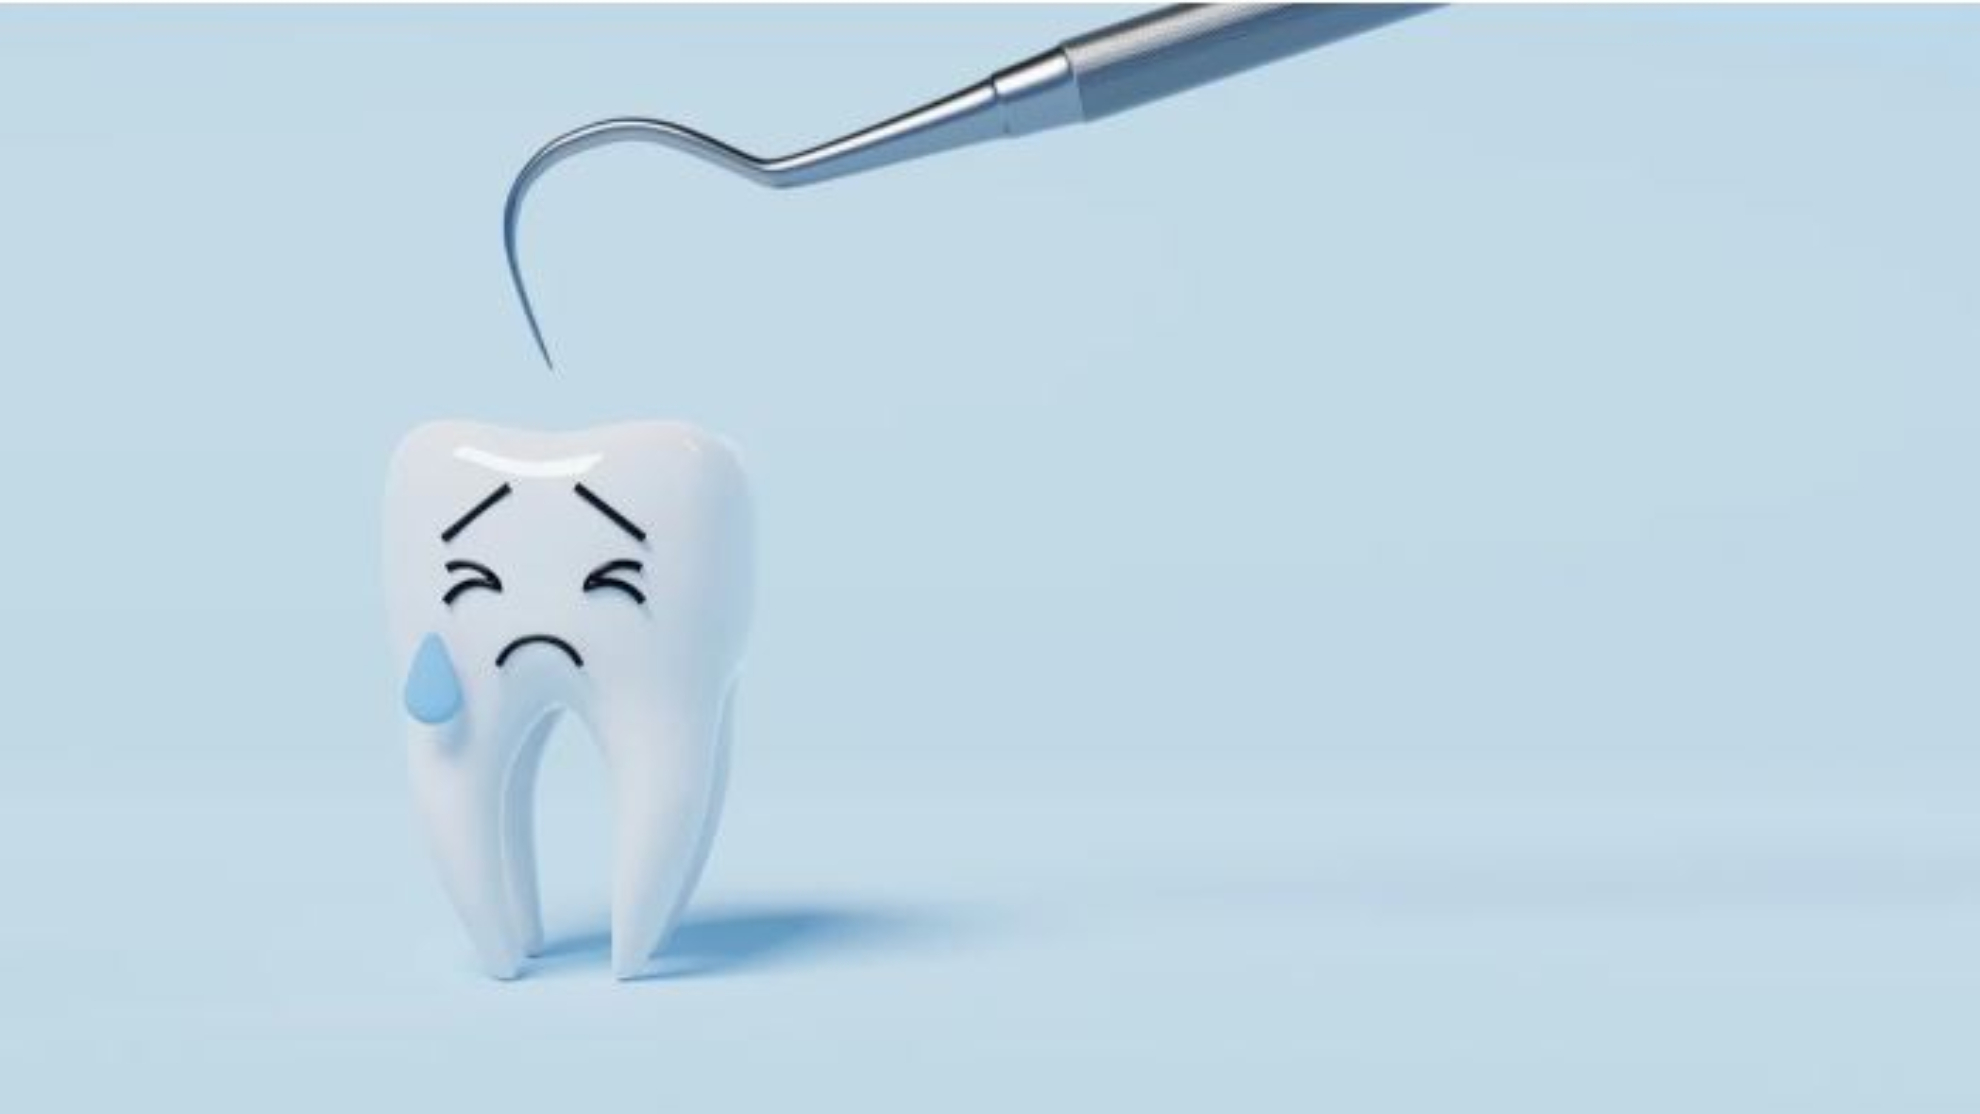 Turkeyteeth: qu riesgos hay de iniciar un tratamiento dental en Turqua